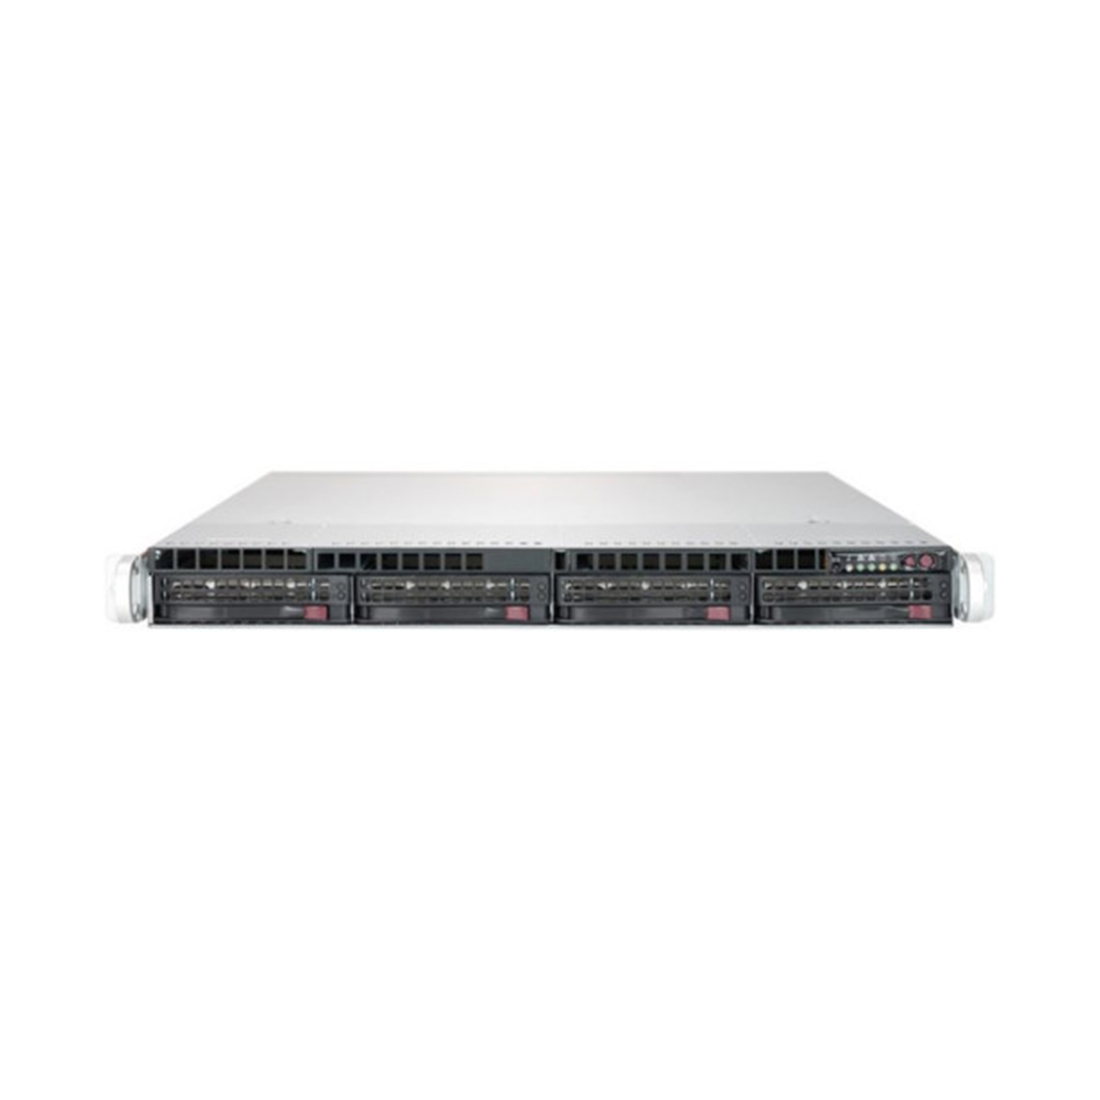 Серверная платформа SUPERMICRO SYS-6019P-WTR - купить по цене 873 040 тг. в интернет-магазине Forcecom.kz